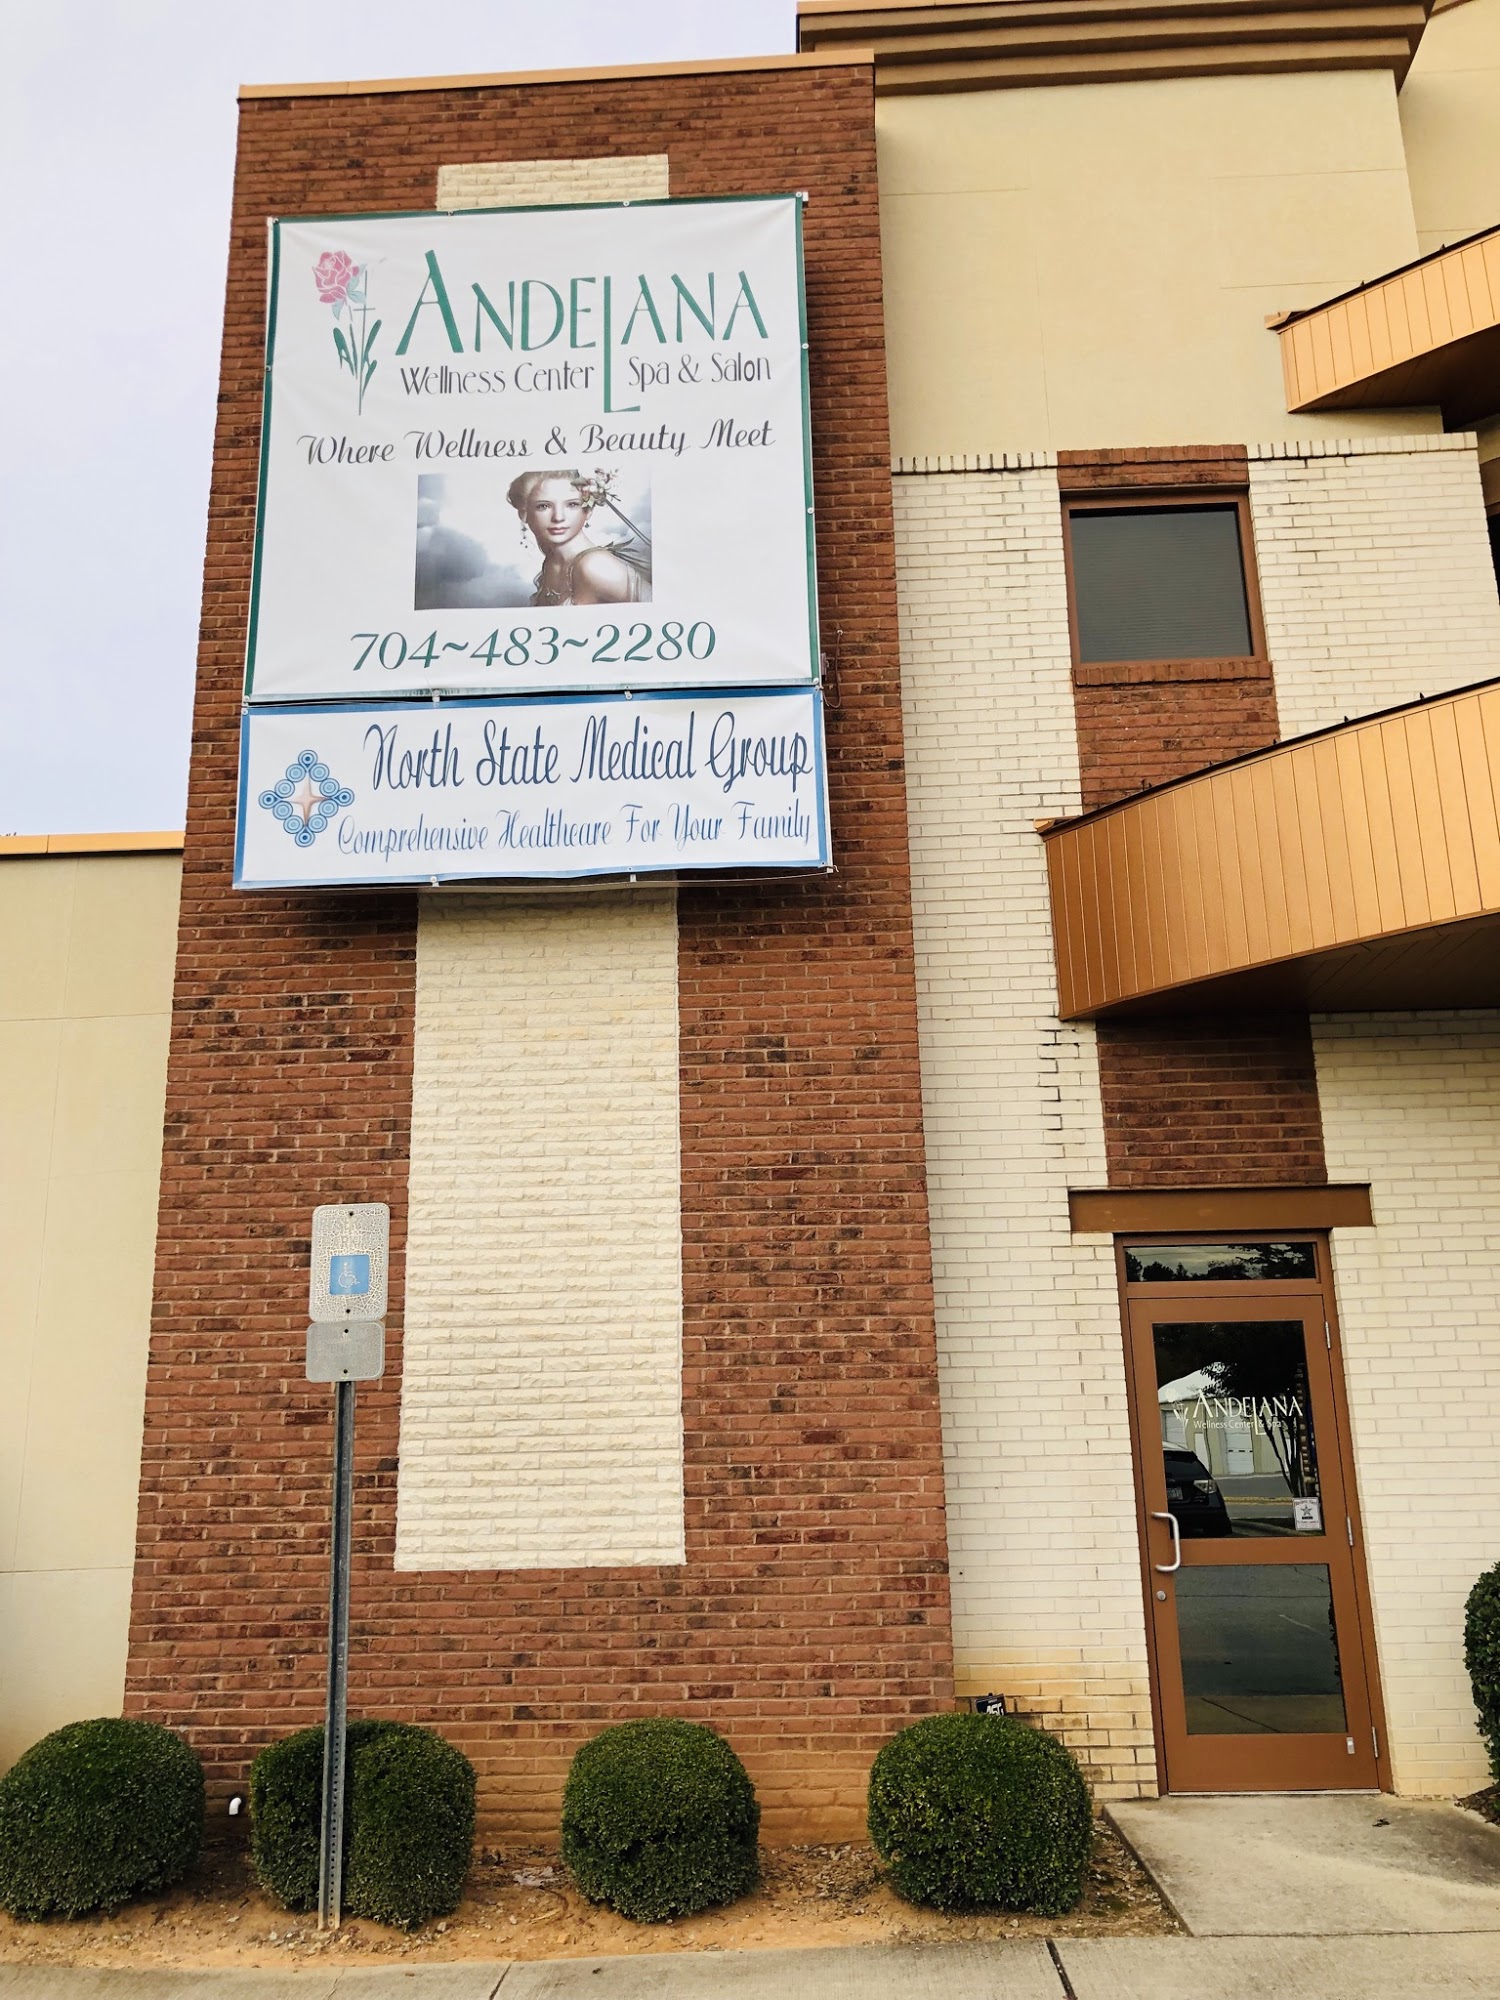 Andelana Wellness Center & Spa